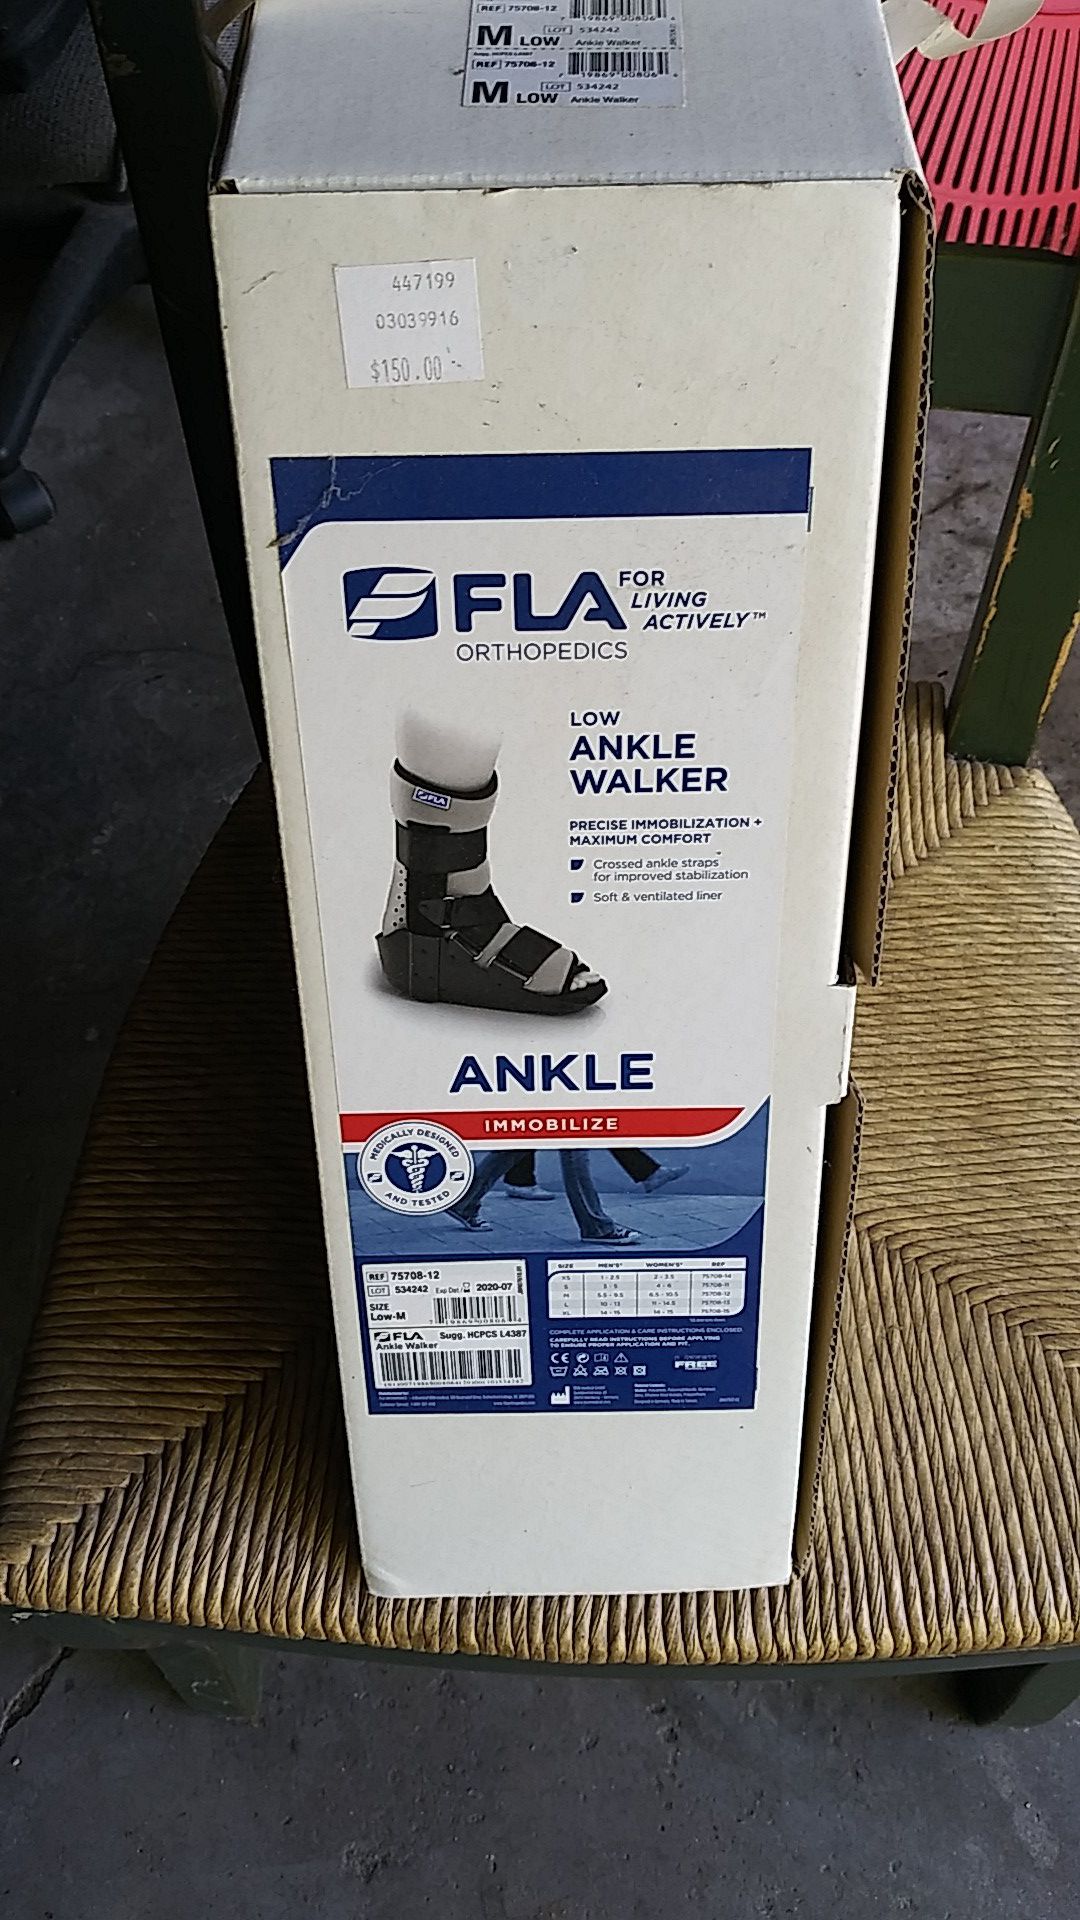 Low ankle walker